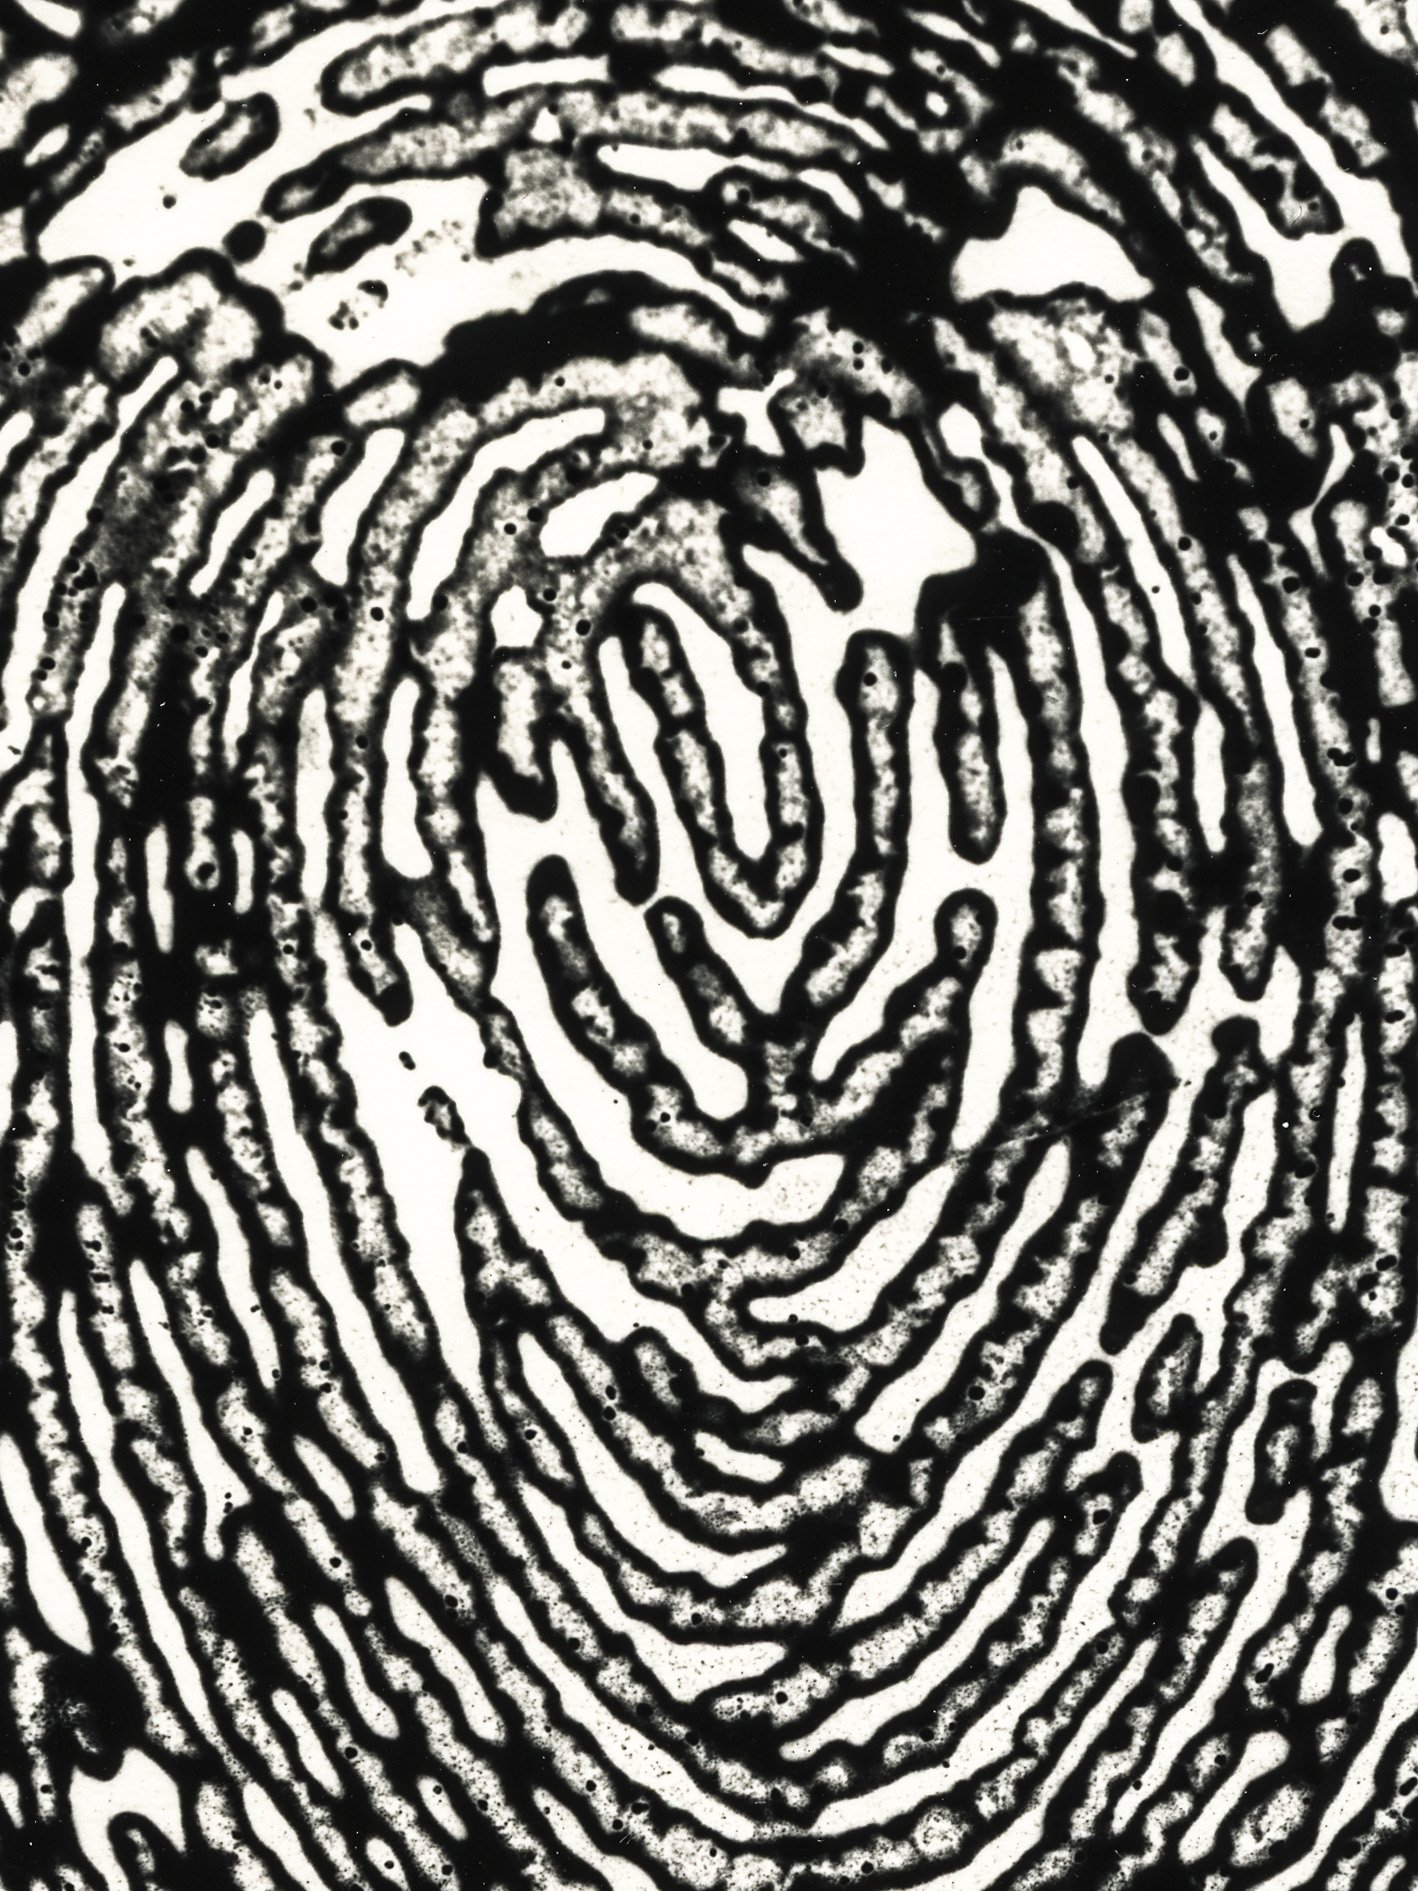 Fingerprint Interior, Mia Fritze